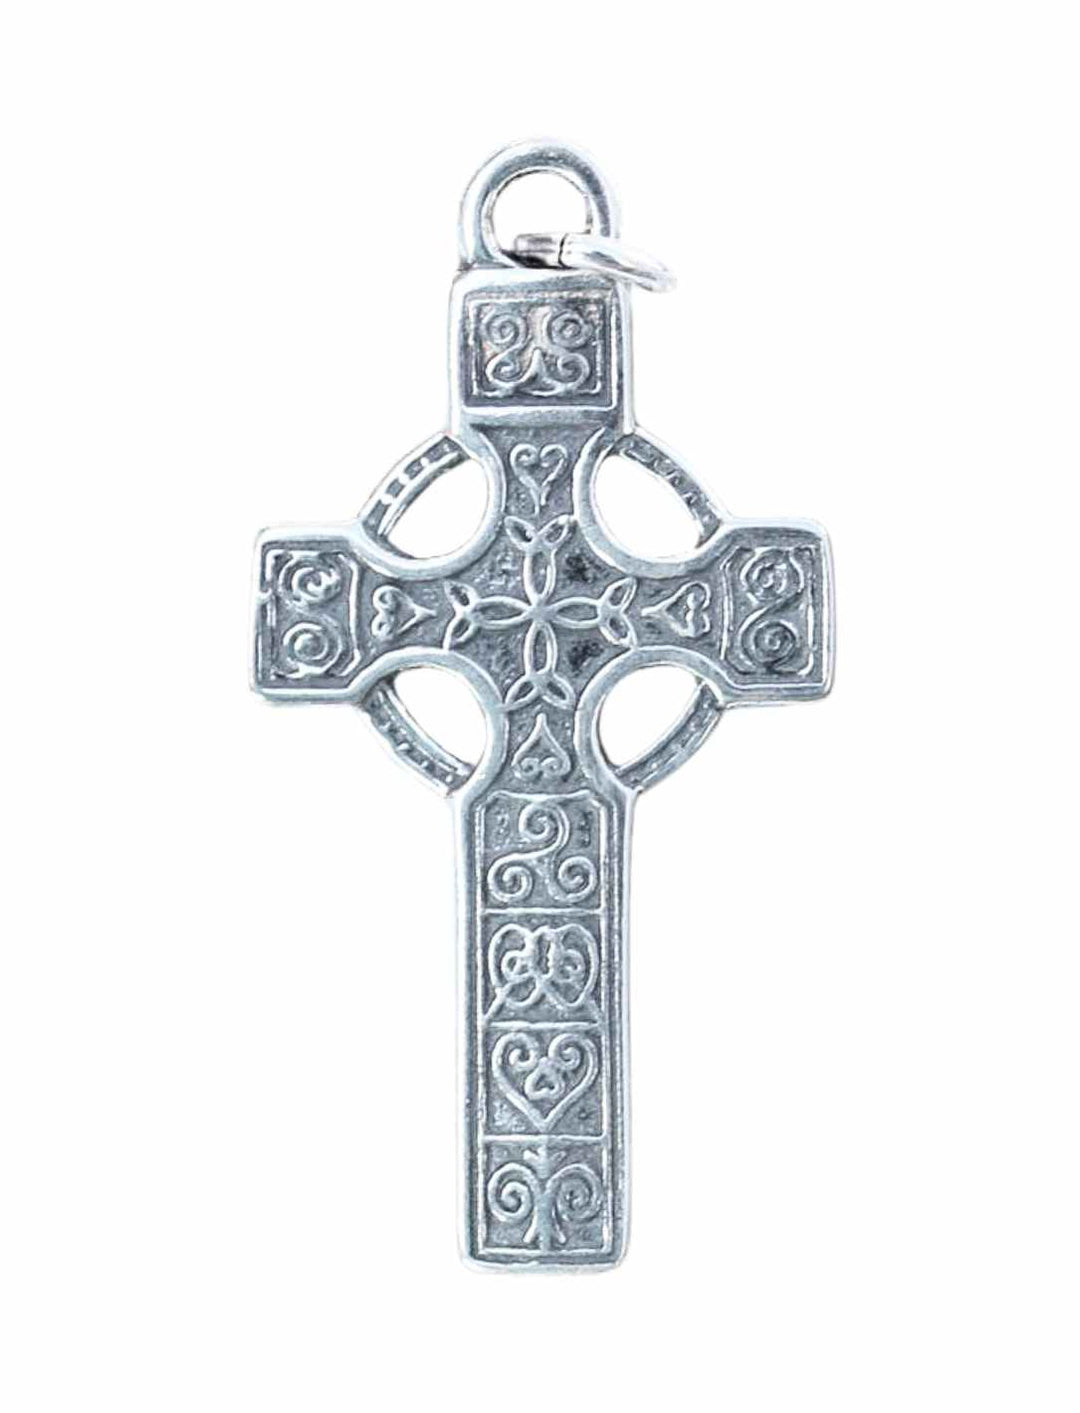 Erin's Erbe Keltischer Kreuzanhänger aus 925 Sterling Silber mit filigranen Triskele-Mustern - Produktansicht bei Runental.de